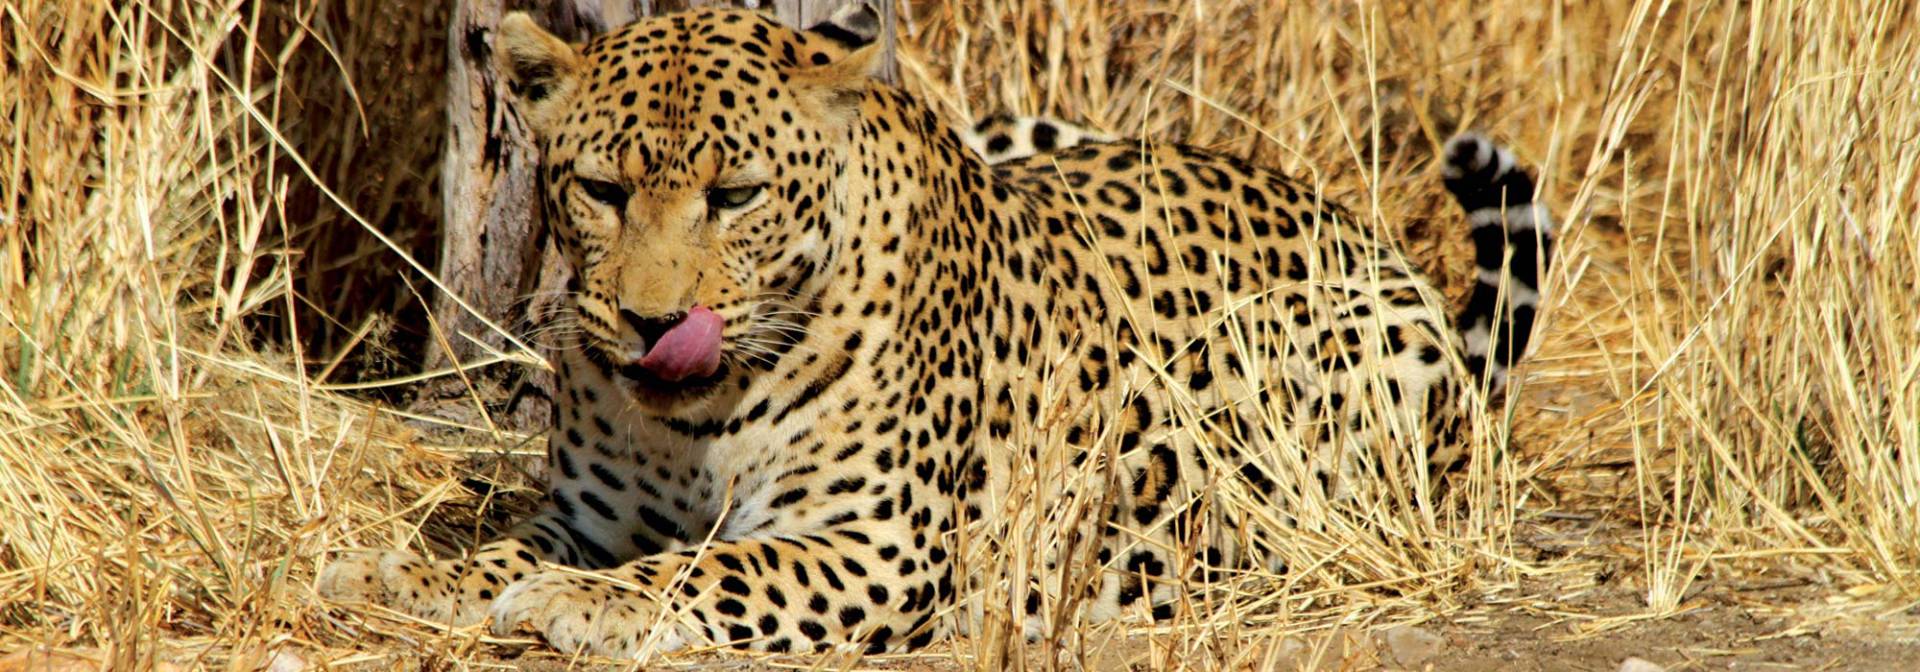 Leopardenauffangstation in Namibia